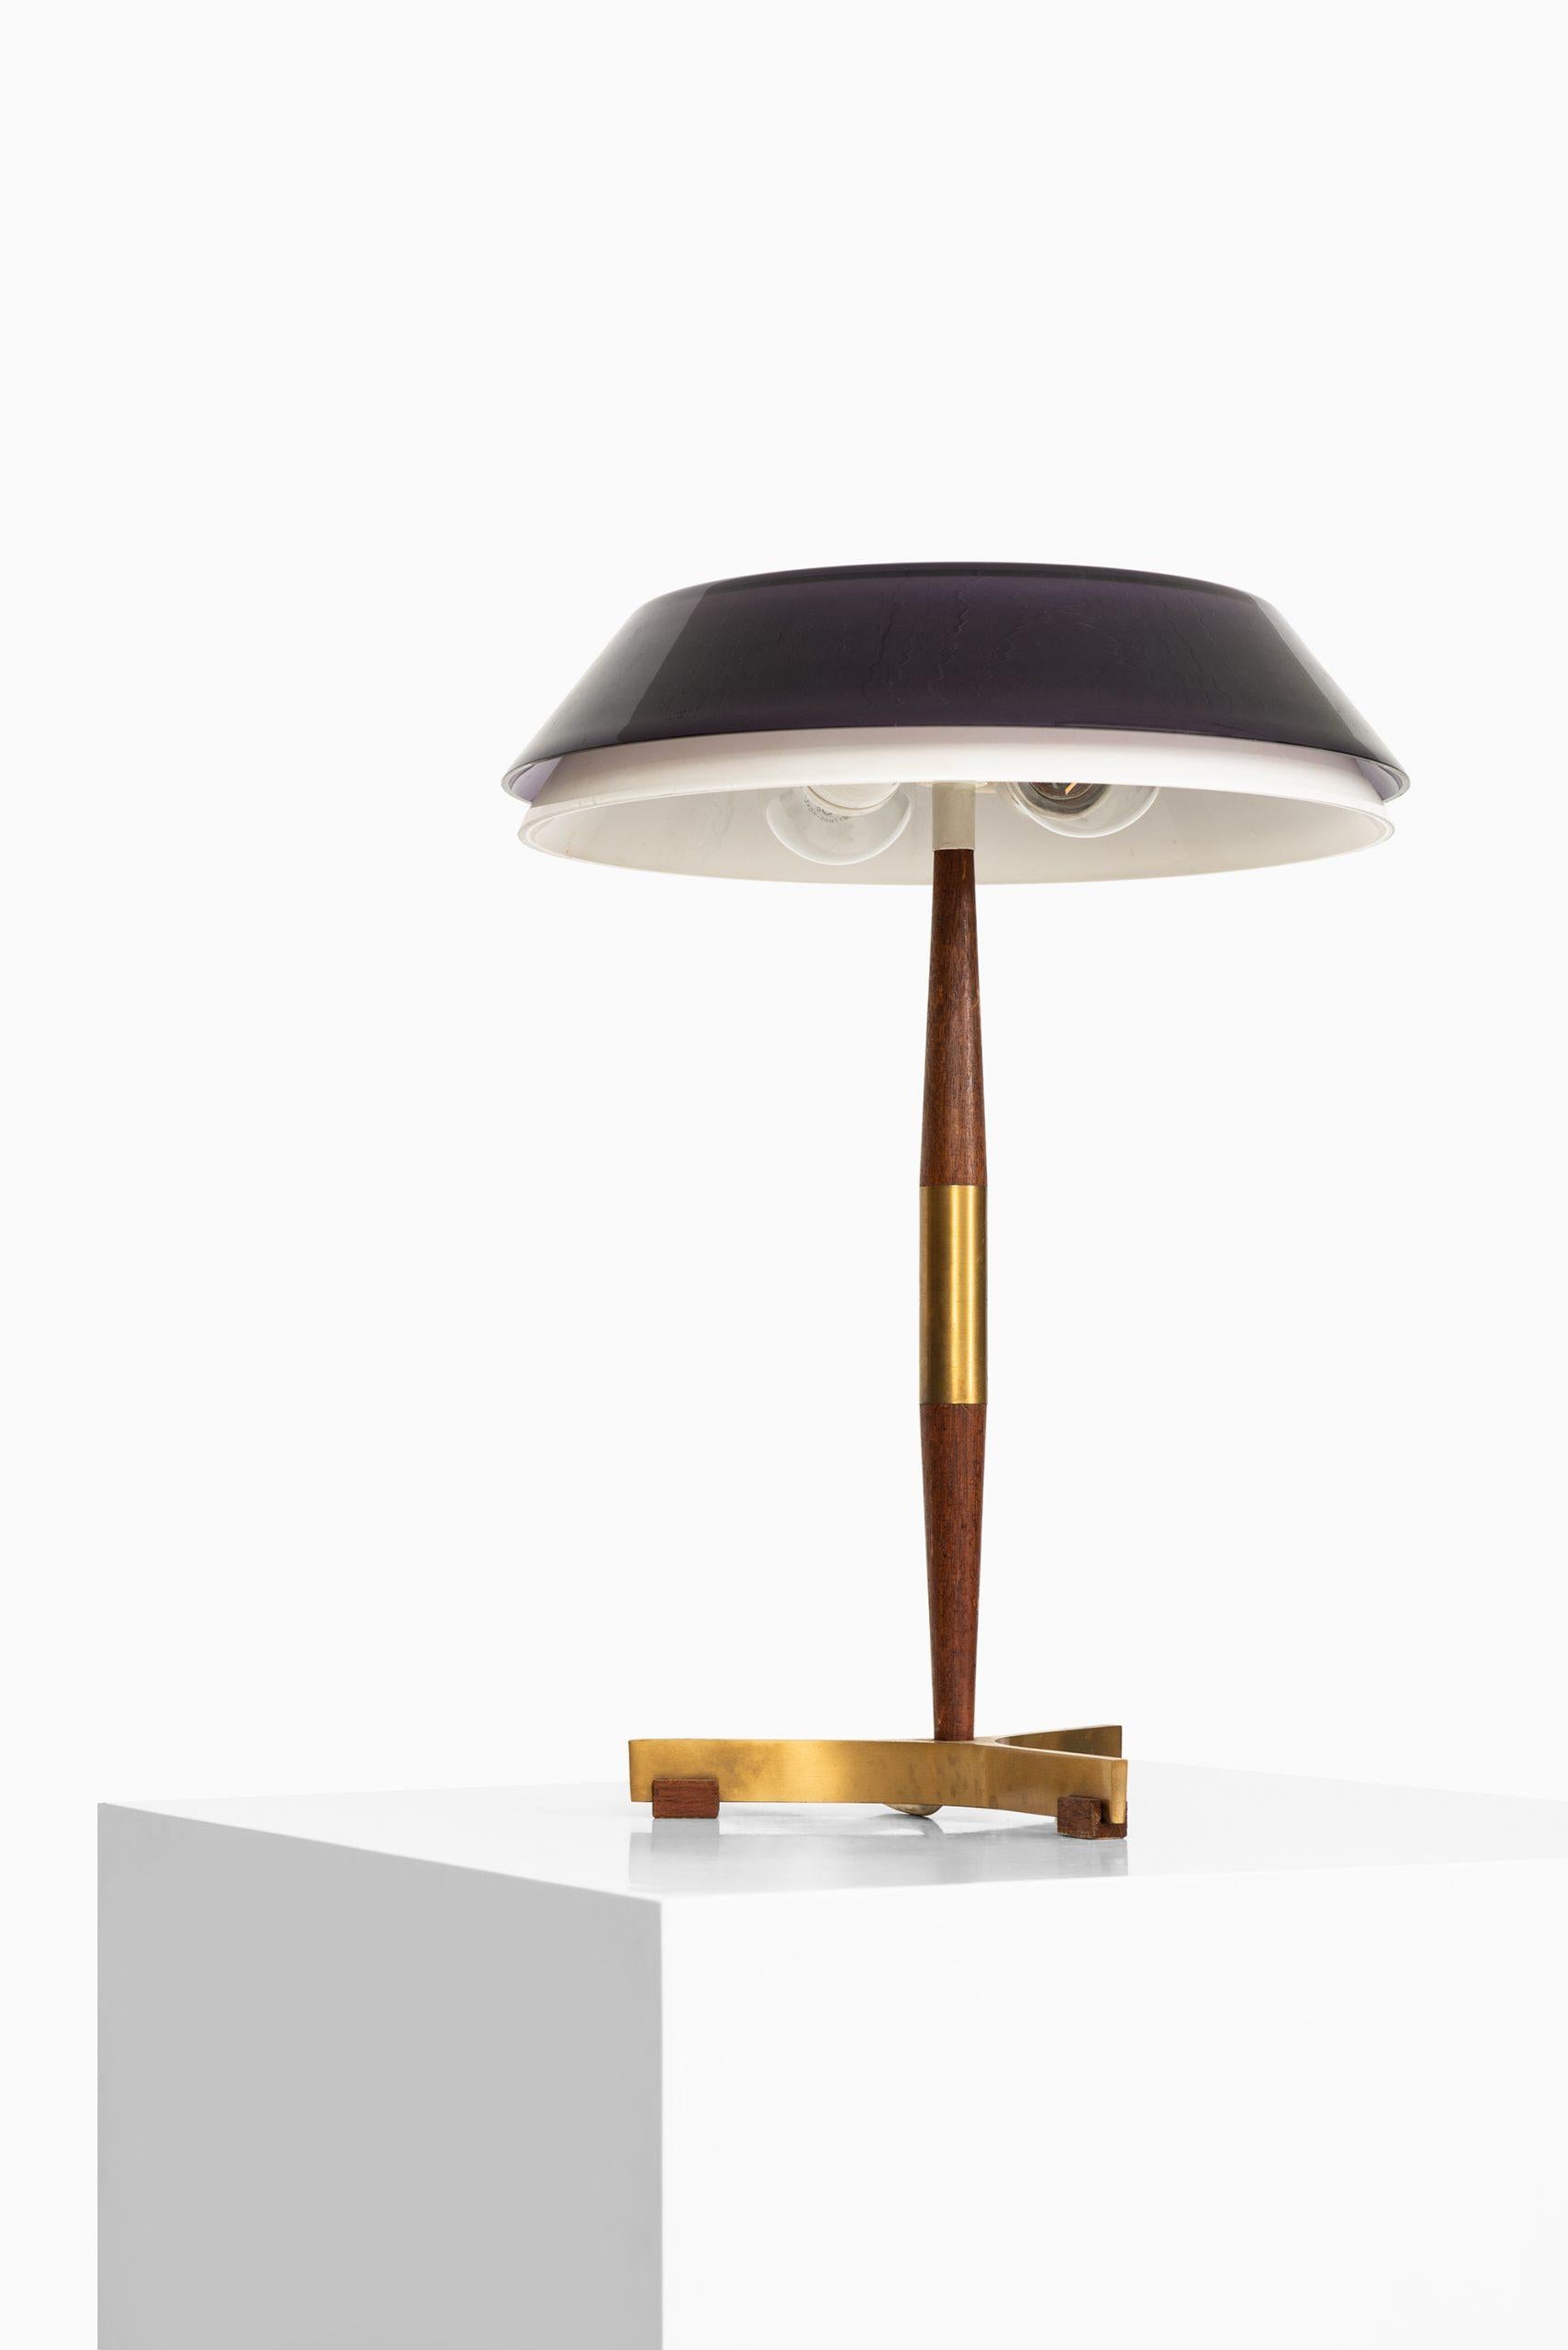 Rare table lamp model senior designed by Jo Hammerborg. Produced by Fog & Mørup in Denmark.